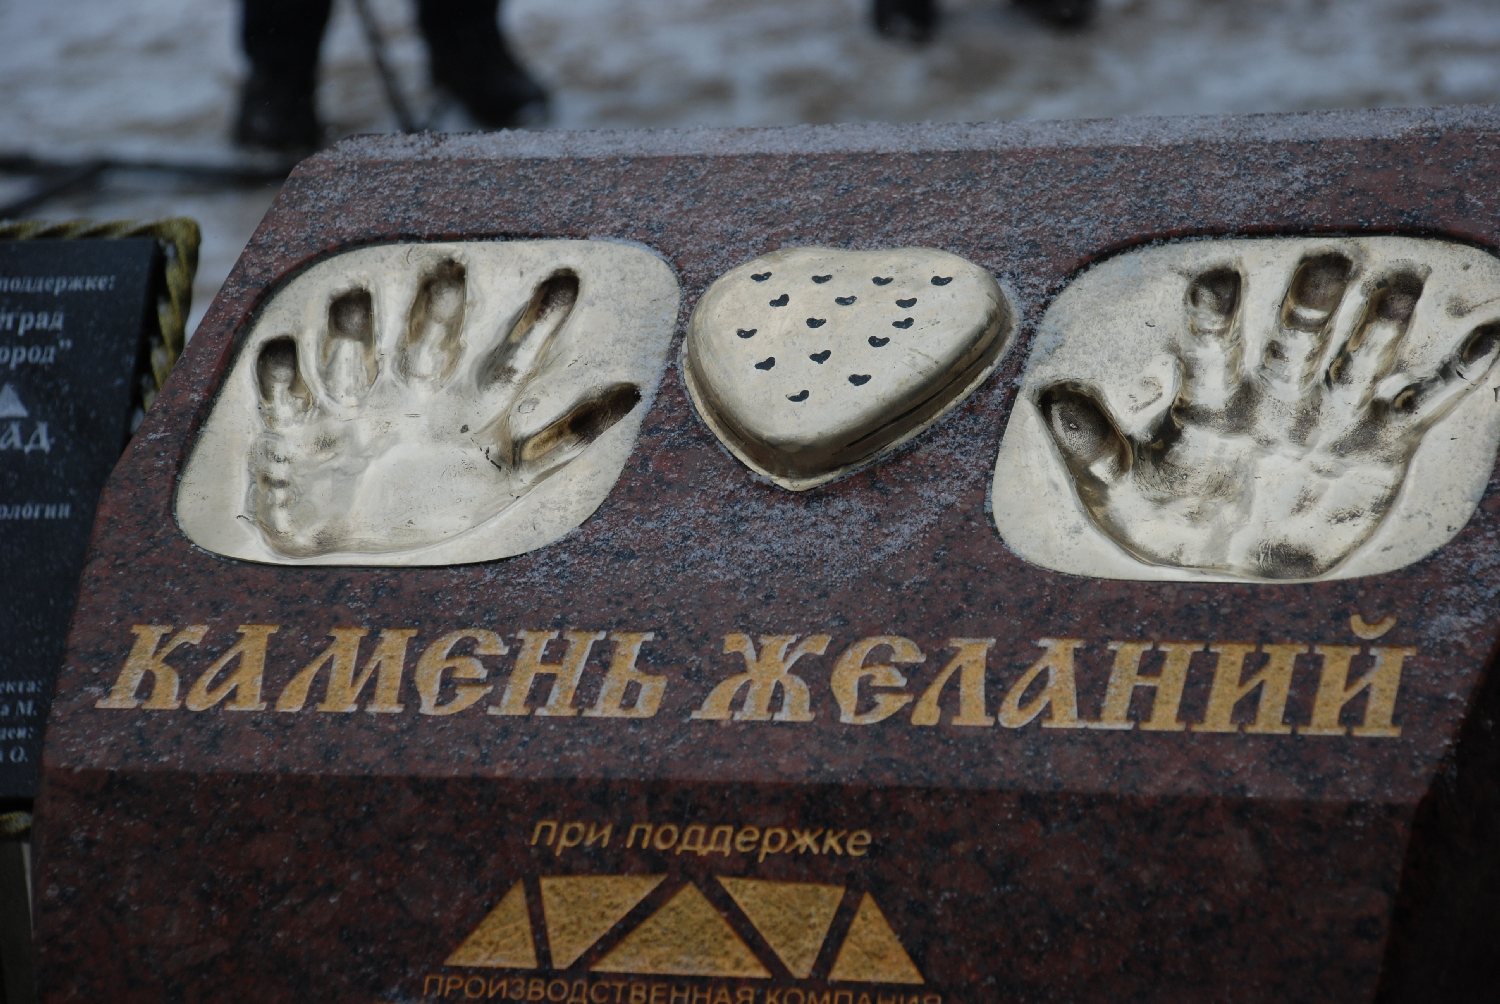 Скульптуру &laquo;Камень желаний&raquo; установили в Нижнем Новгороде (ФОТО) - фото 4